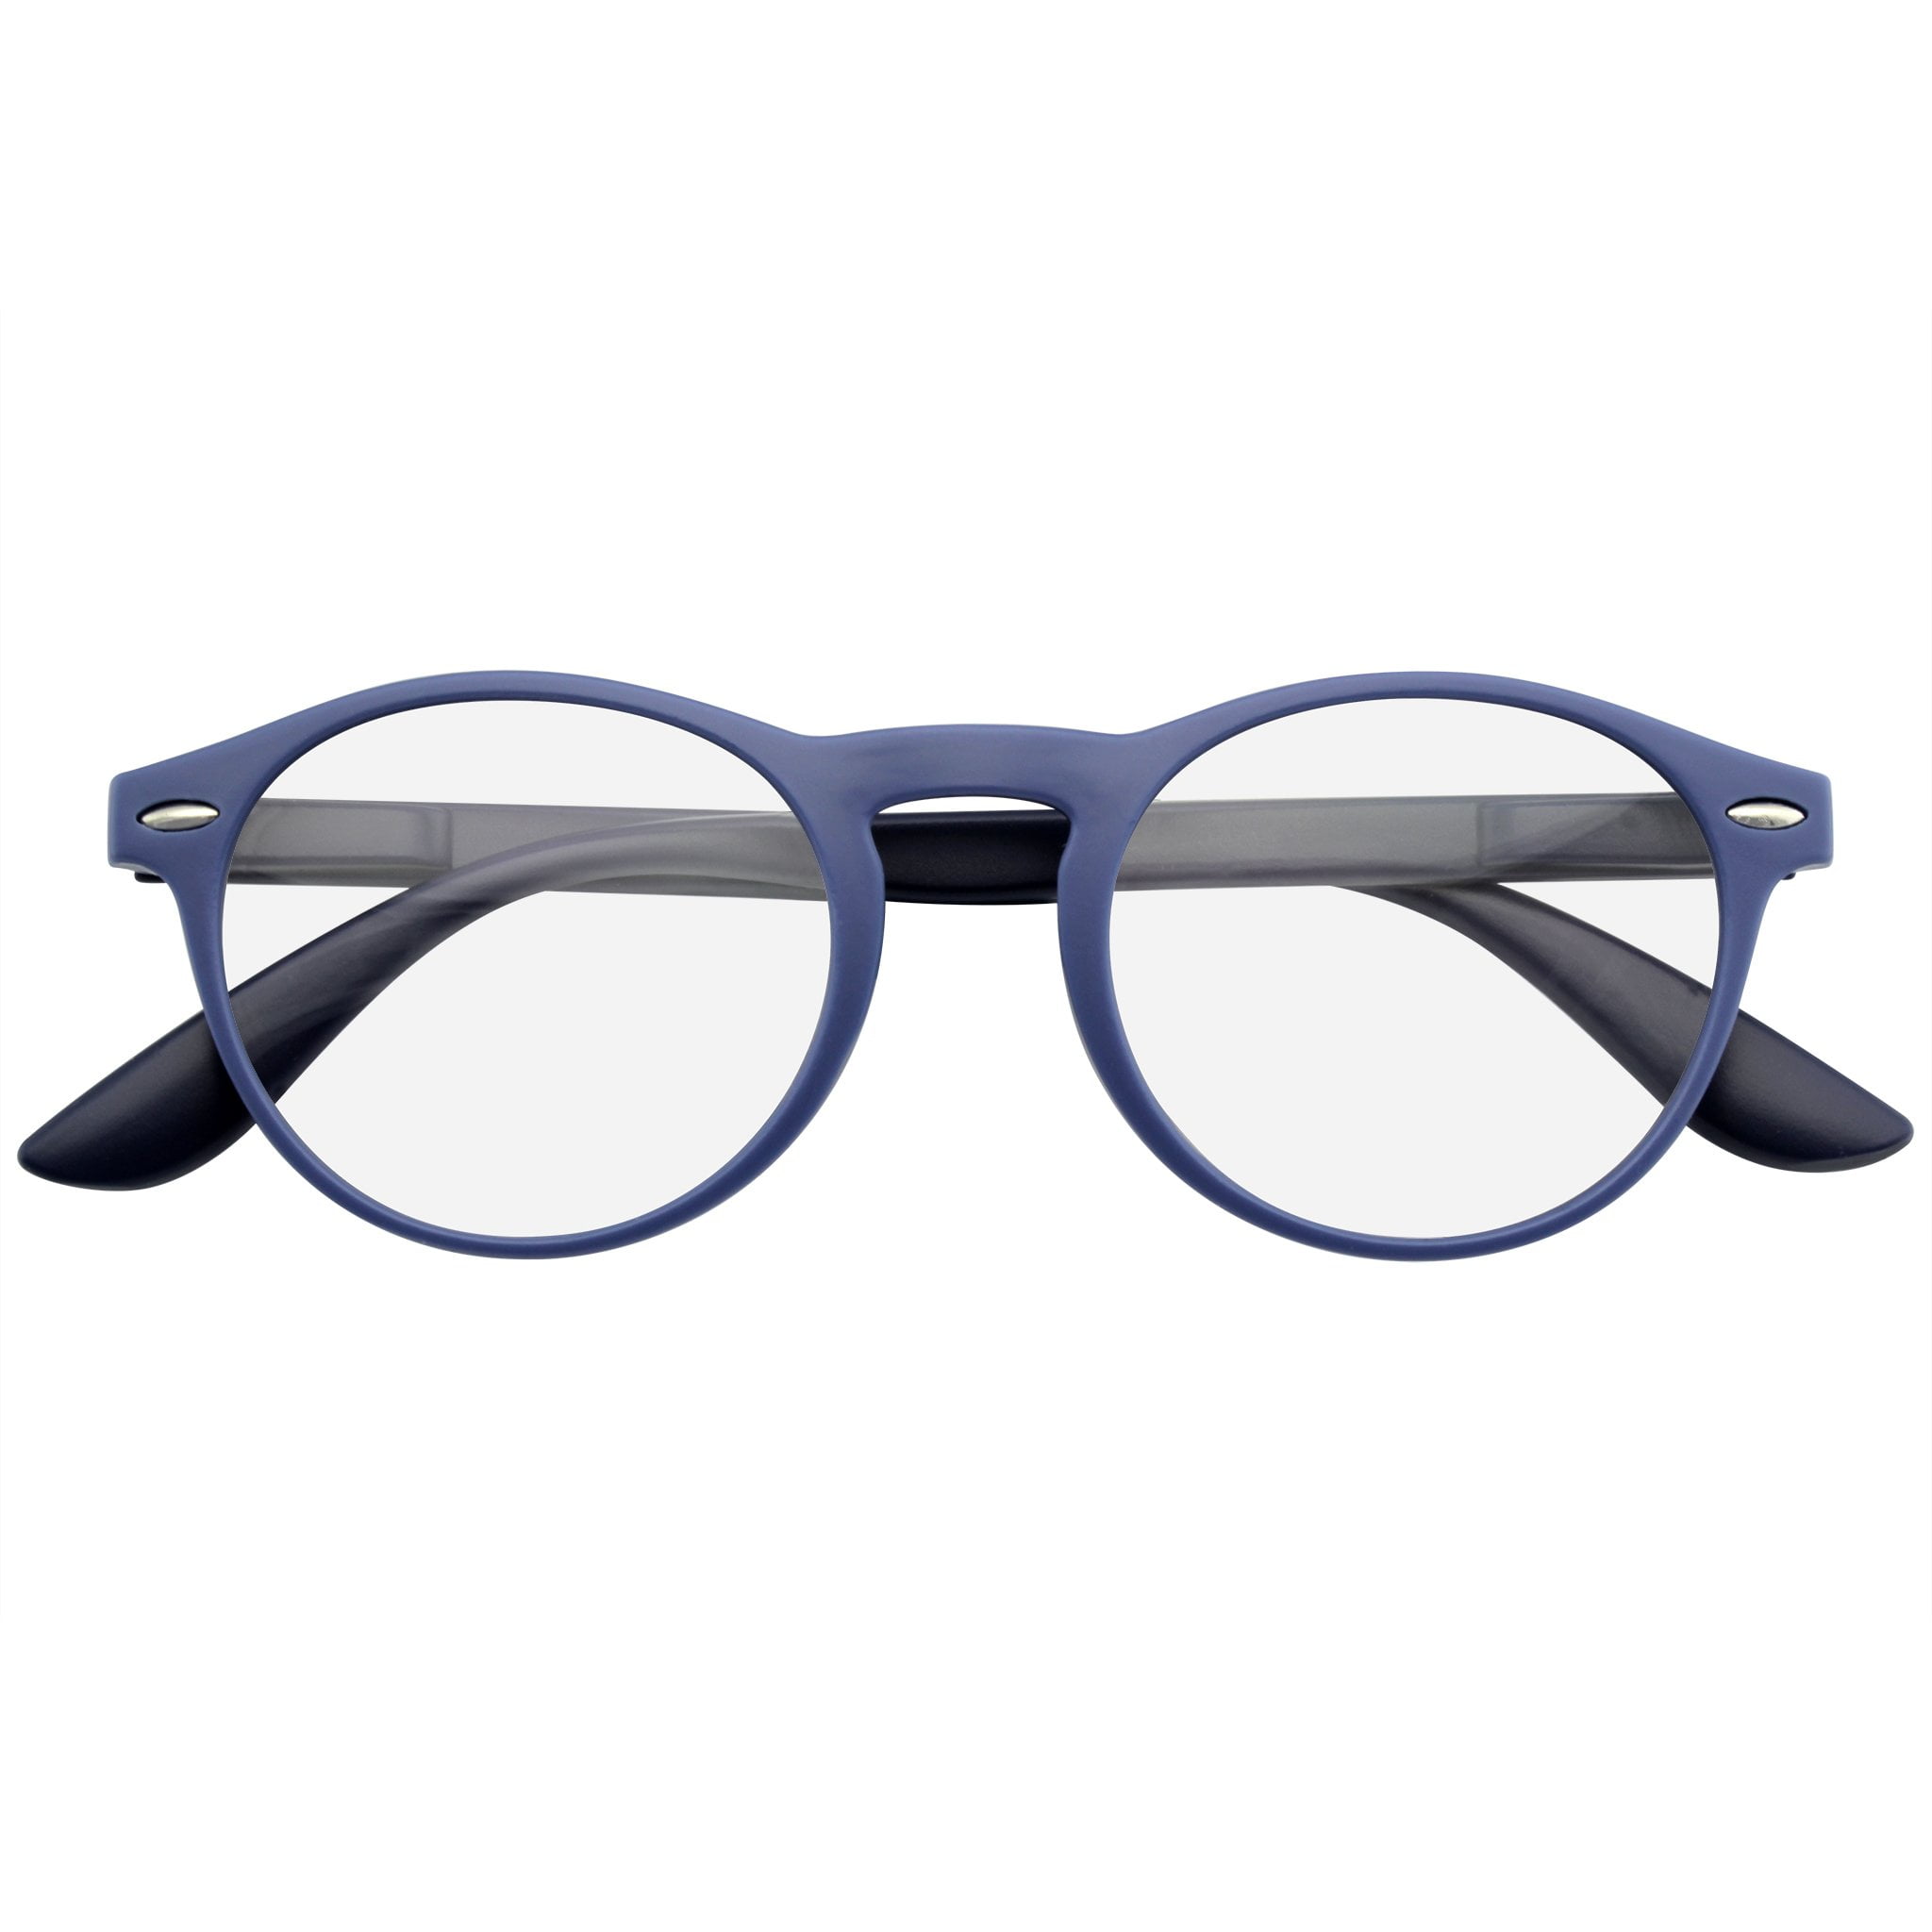 Reading Glasses Magnified Eyeglasses Round Keyhole Fashion Spring Hinge